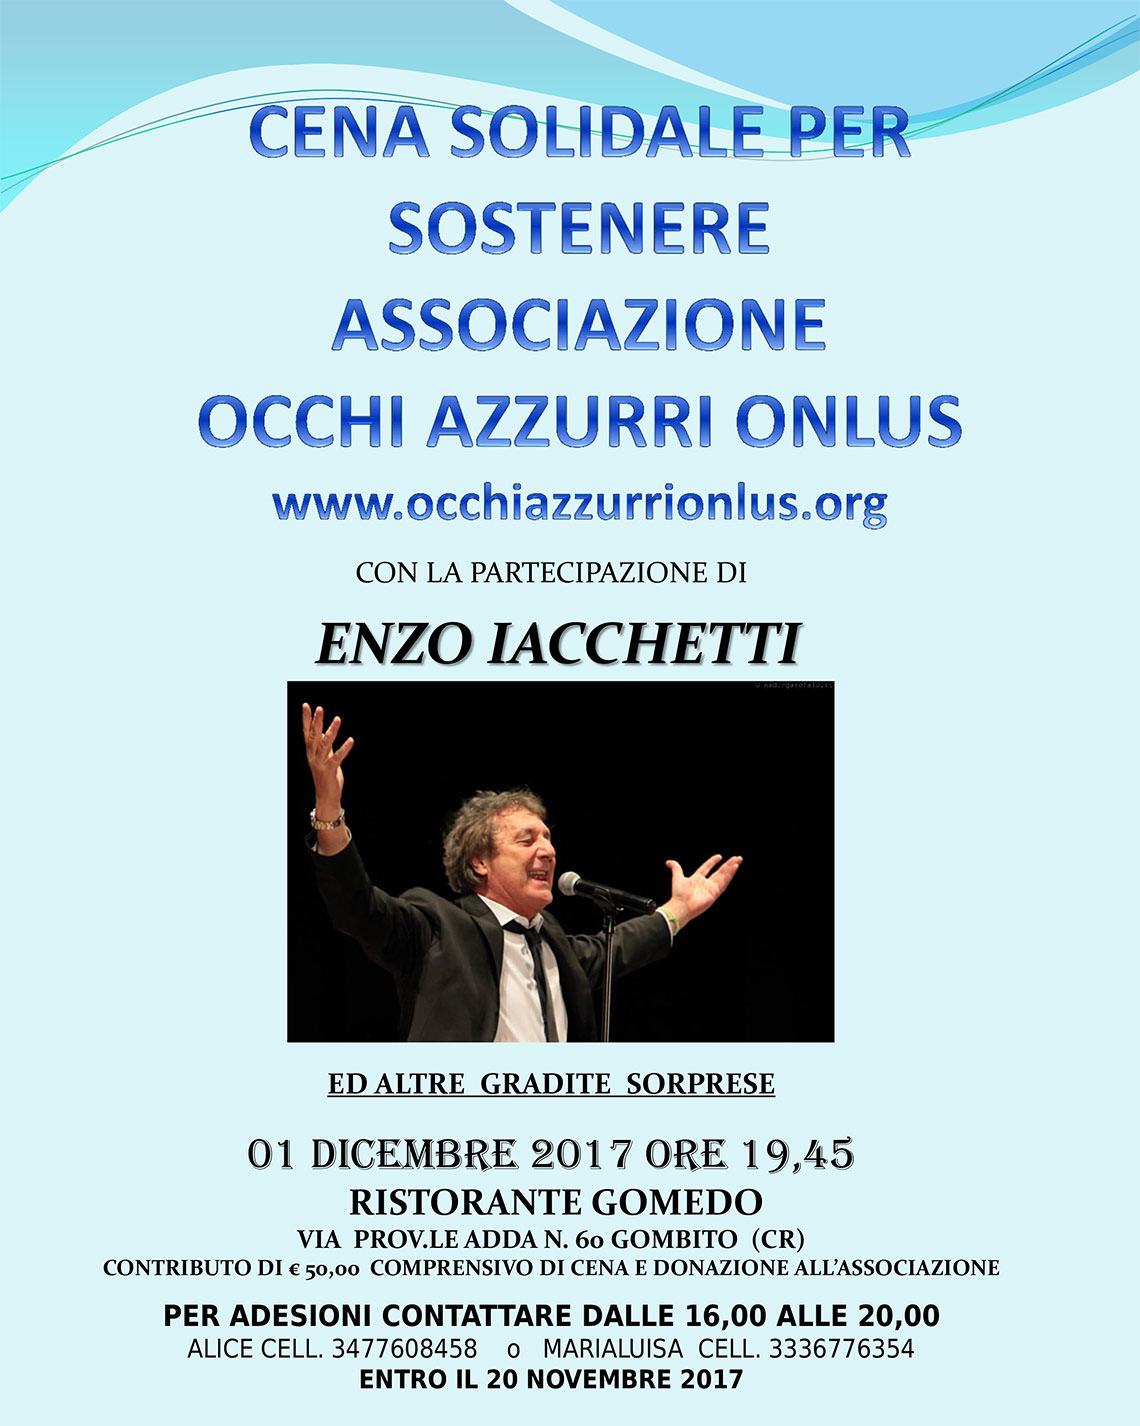 01 dicembre: Cena solidale per sostenere l'associazione Occhi Azzurri Onlus